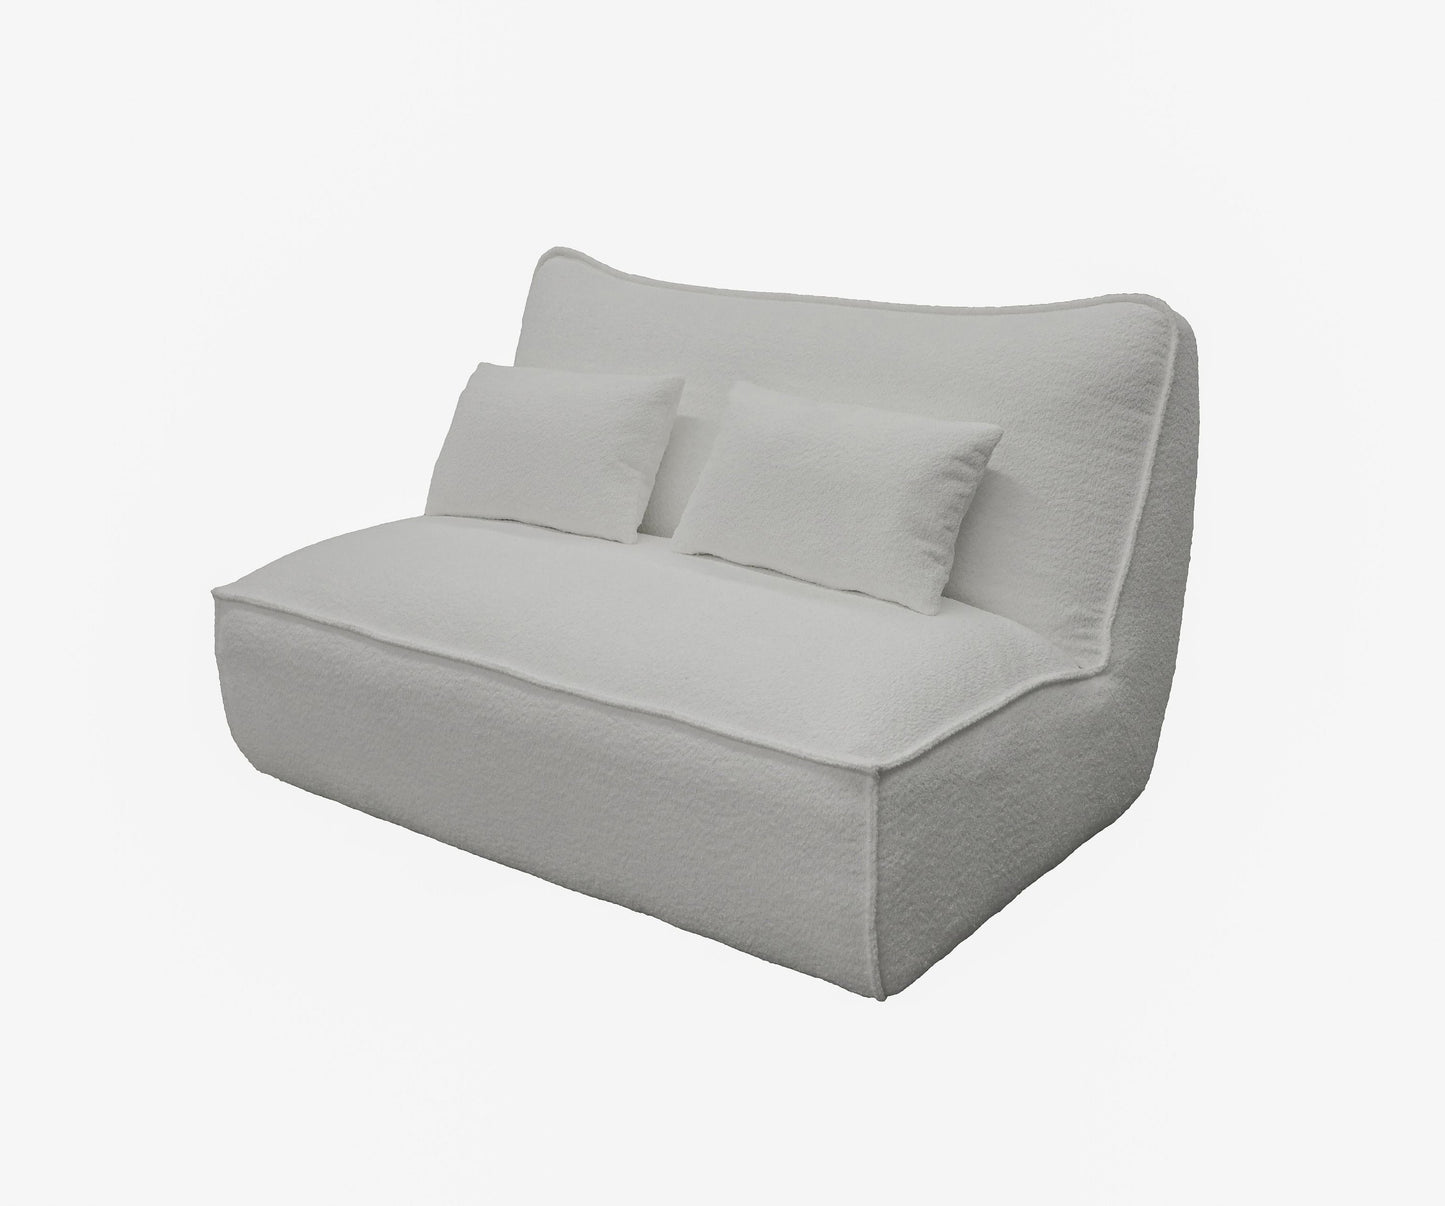 Divani Casa Racine Modern White Fabric Modular Sectional Sofa 6